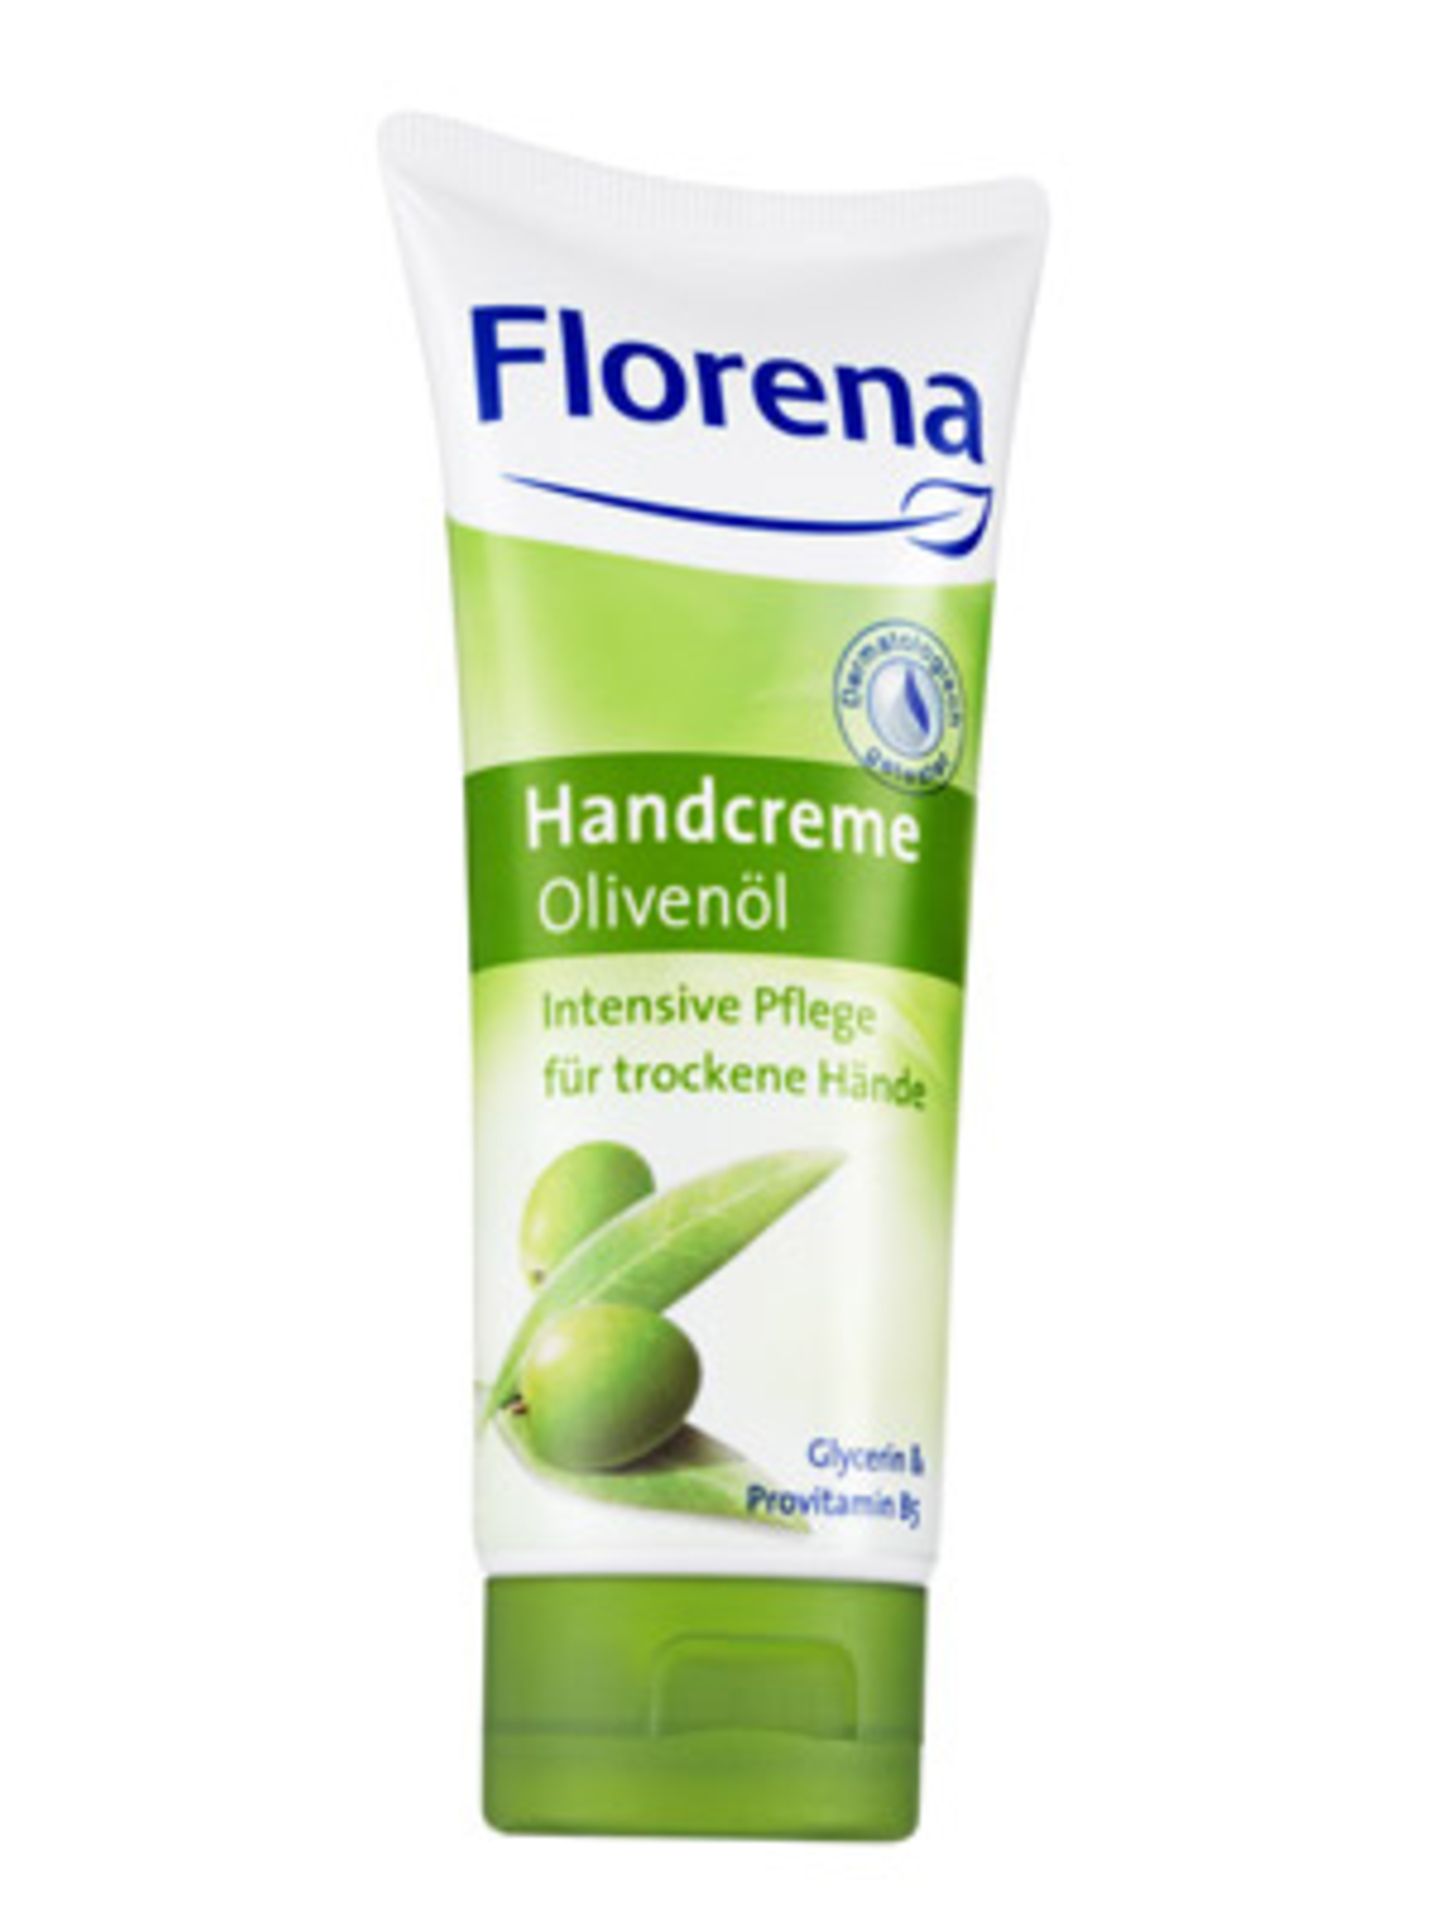 Speziell für trockene Hände: intensiv pflegende Handcreme mit Olivenöl von Florena, um 1,60 Euro.